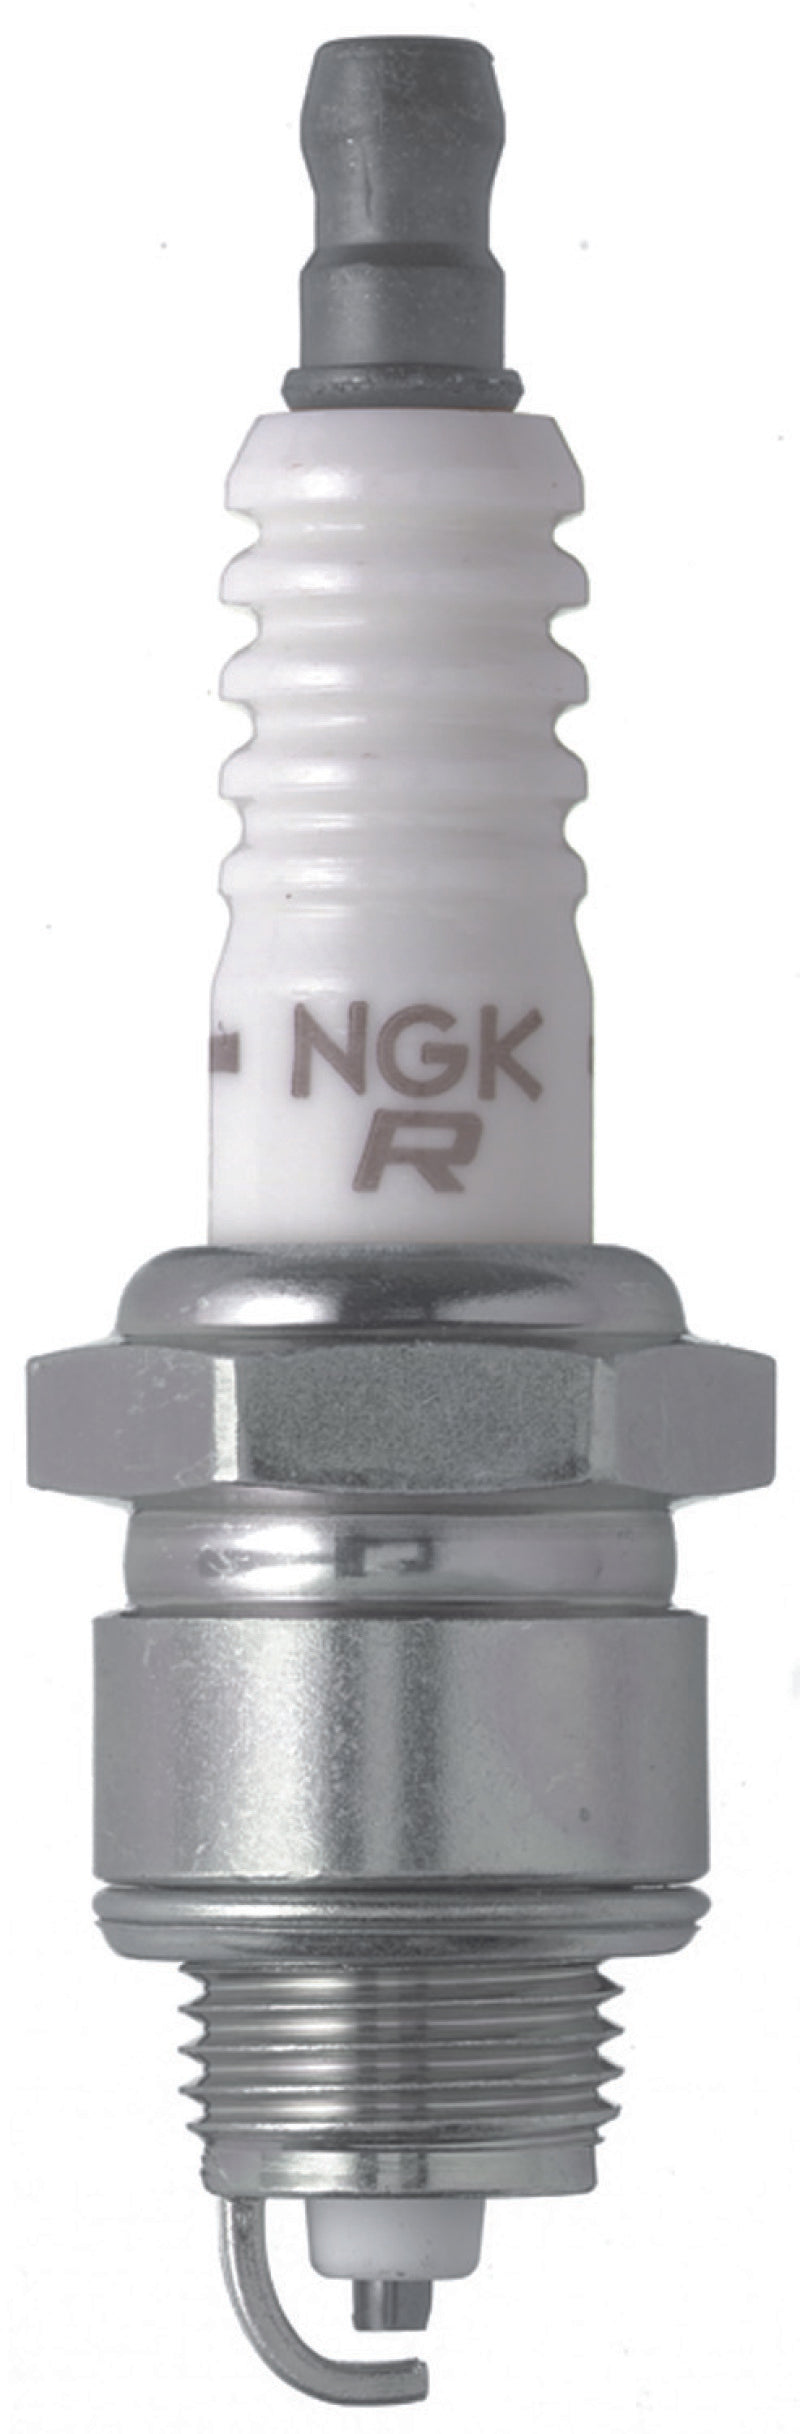 NGK V-Power Spark Plug Box of 4 (XR5)